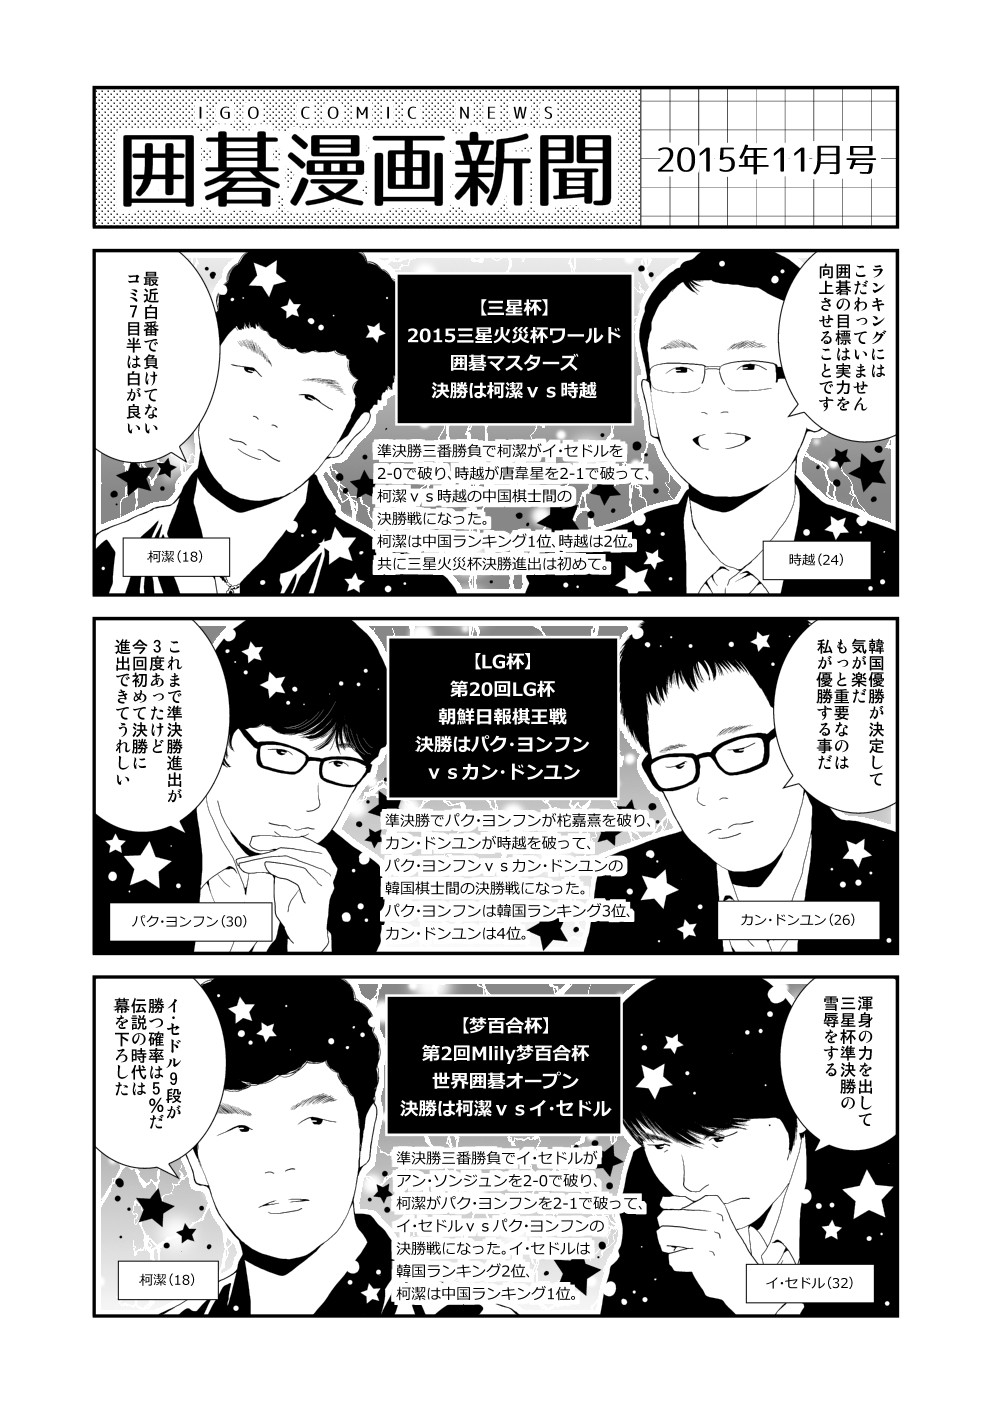 囲碁漫画新聞 15年11月号 Nitro15